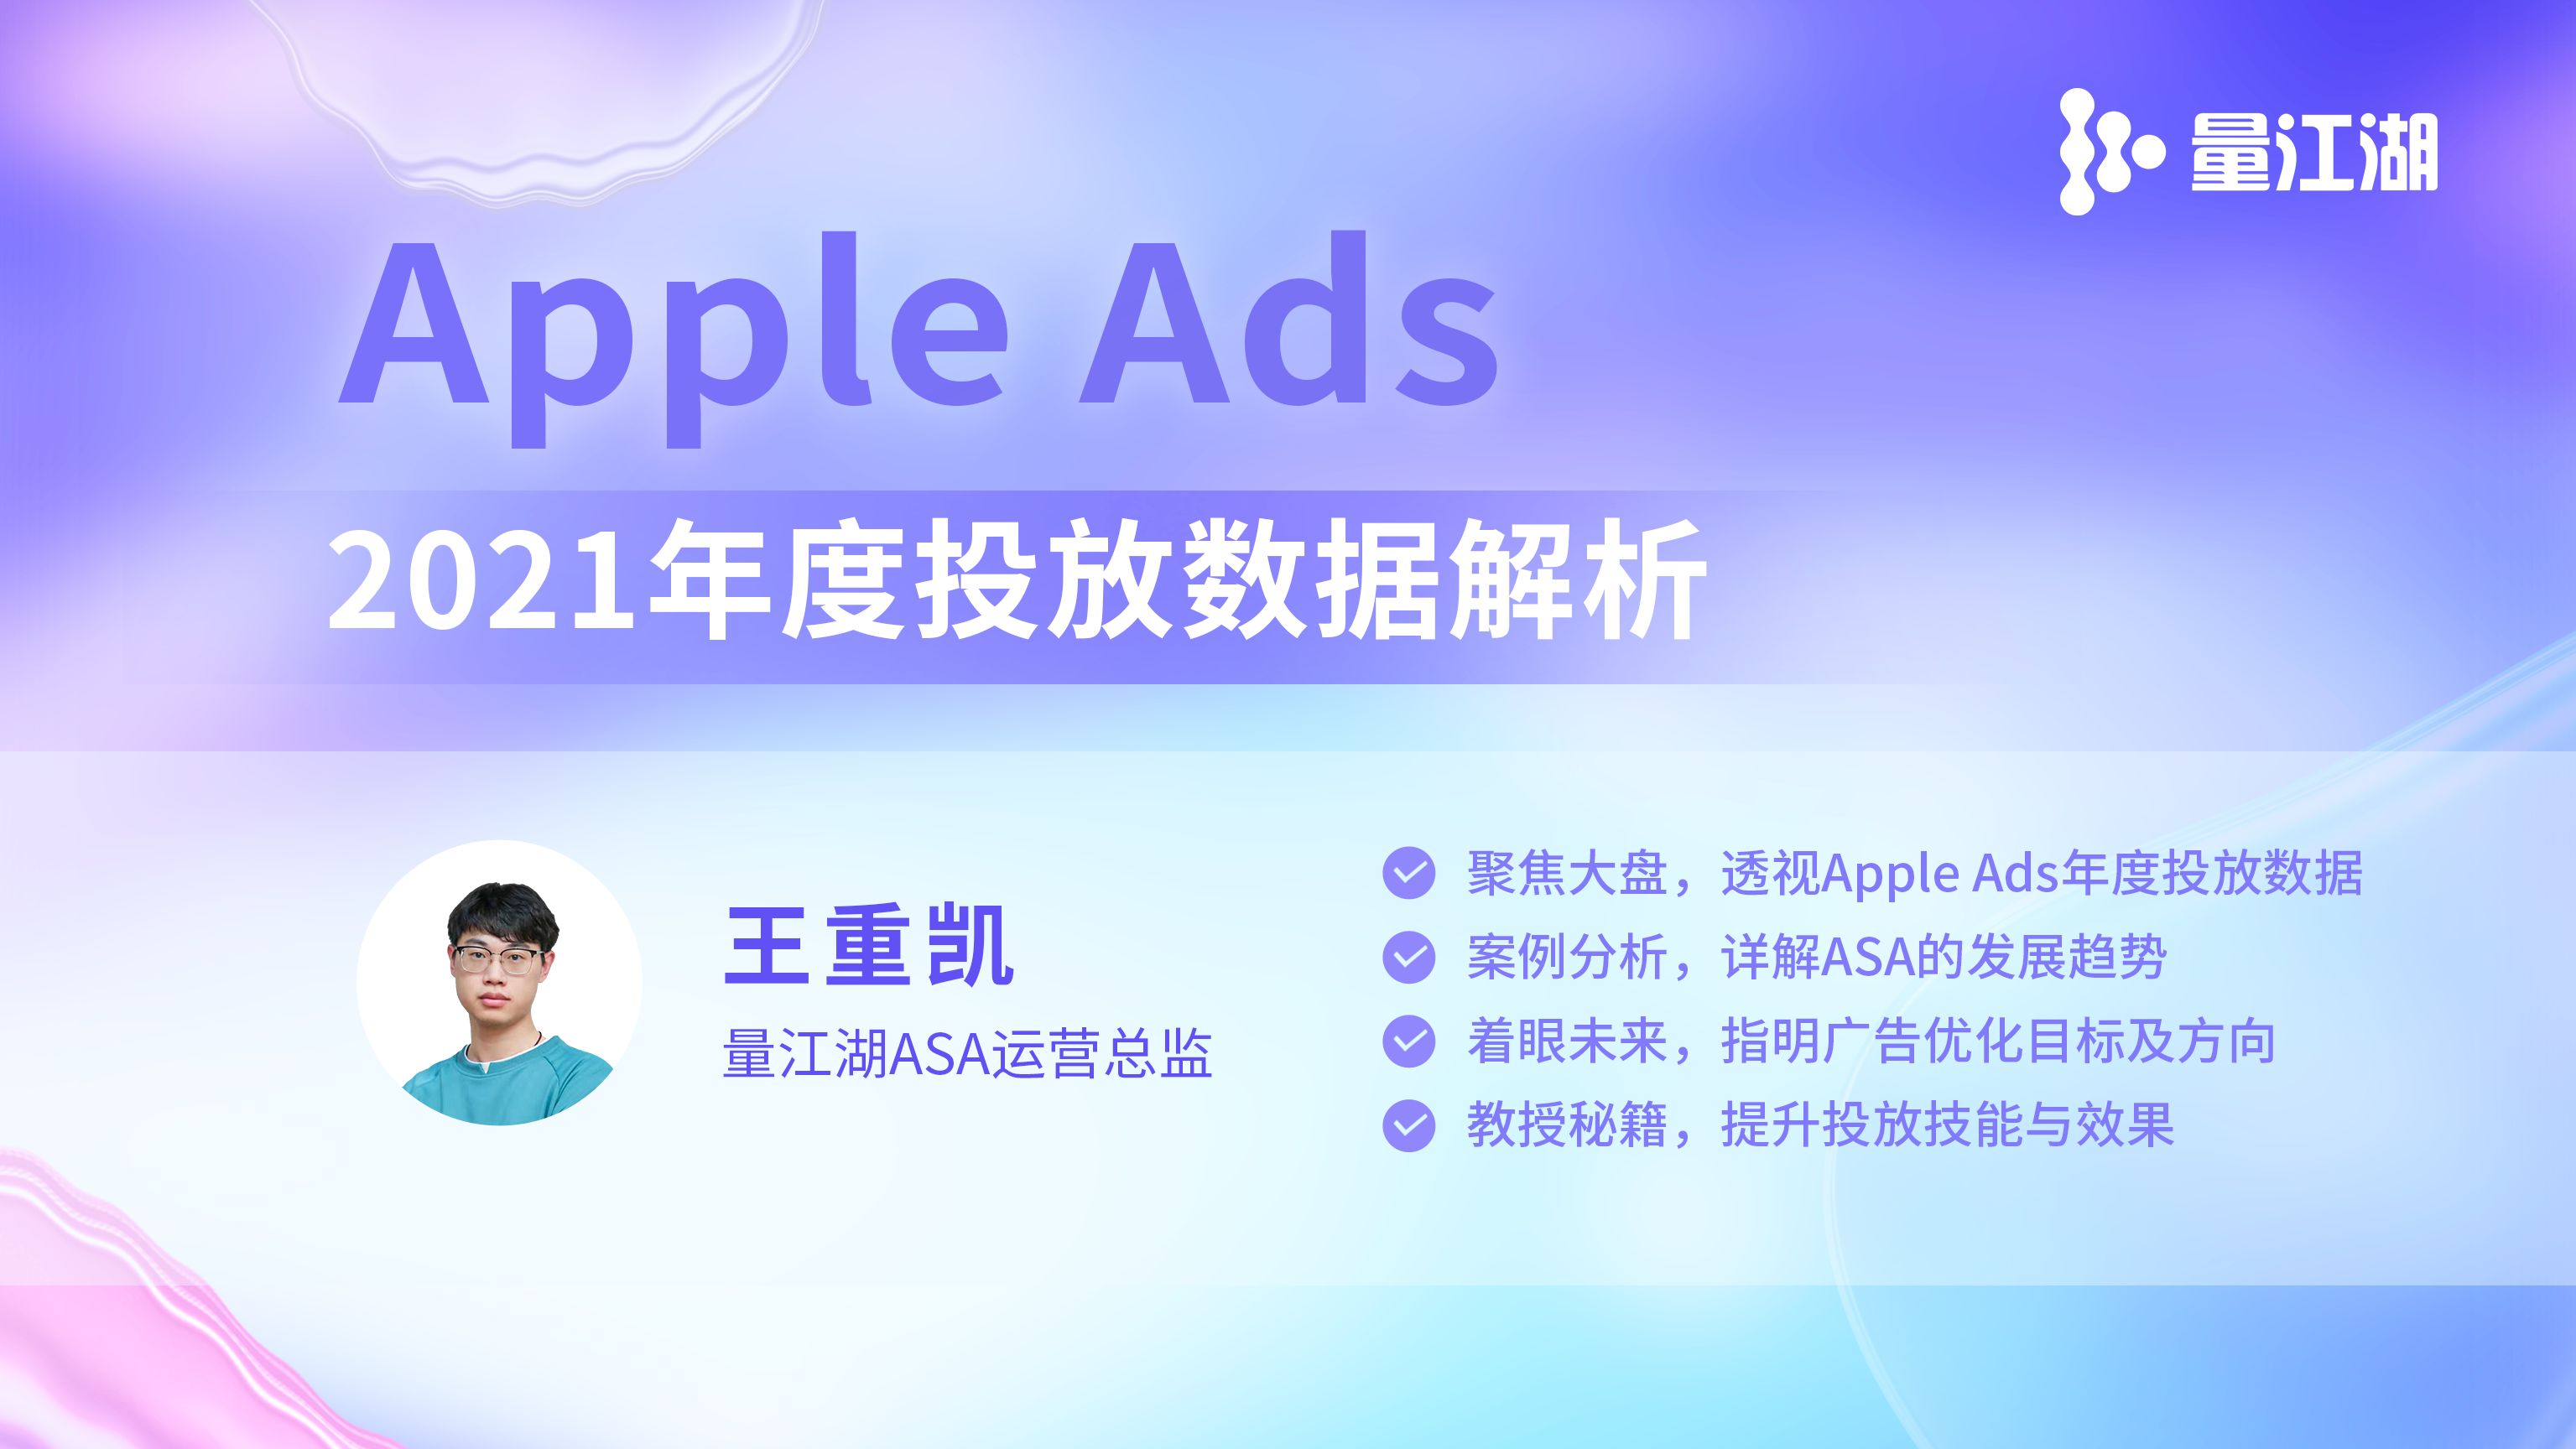 《Apple Ads 2021年度报告》专业数据解析已生成，请查收！